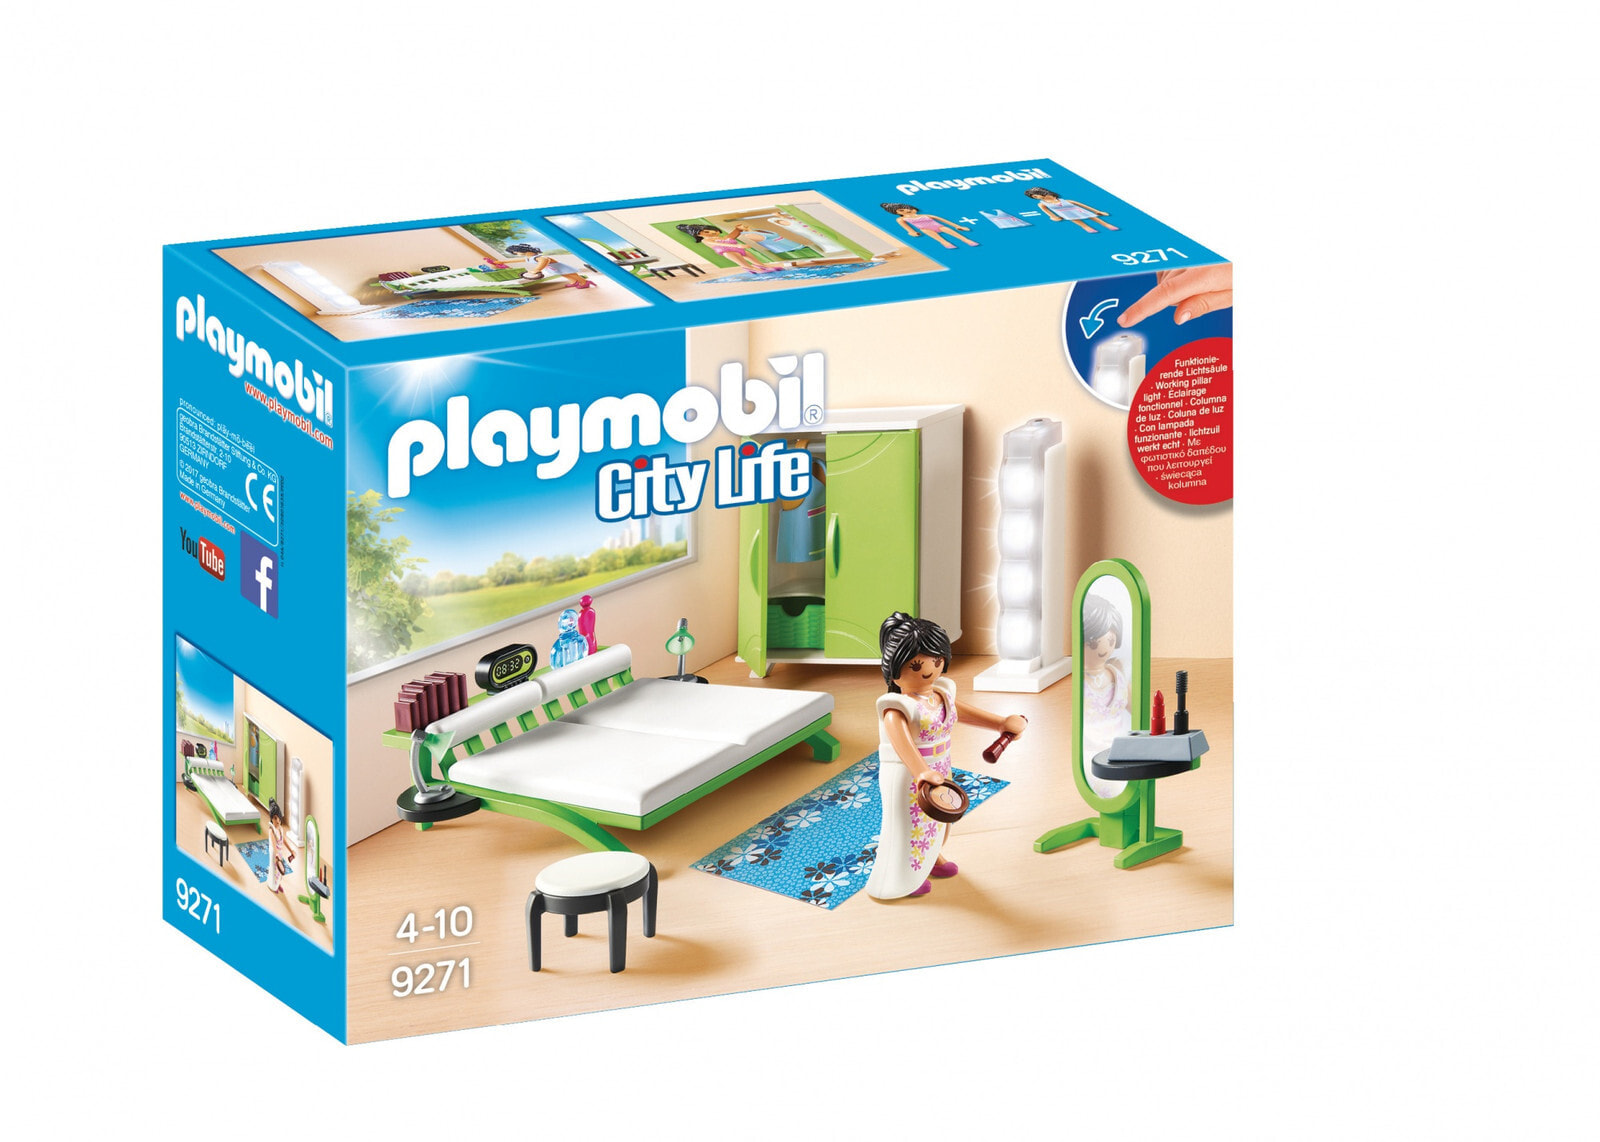 Playmobil City Life 9271 набор игрушек